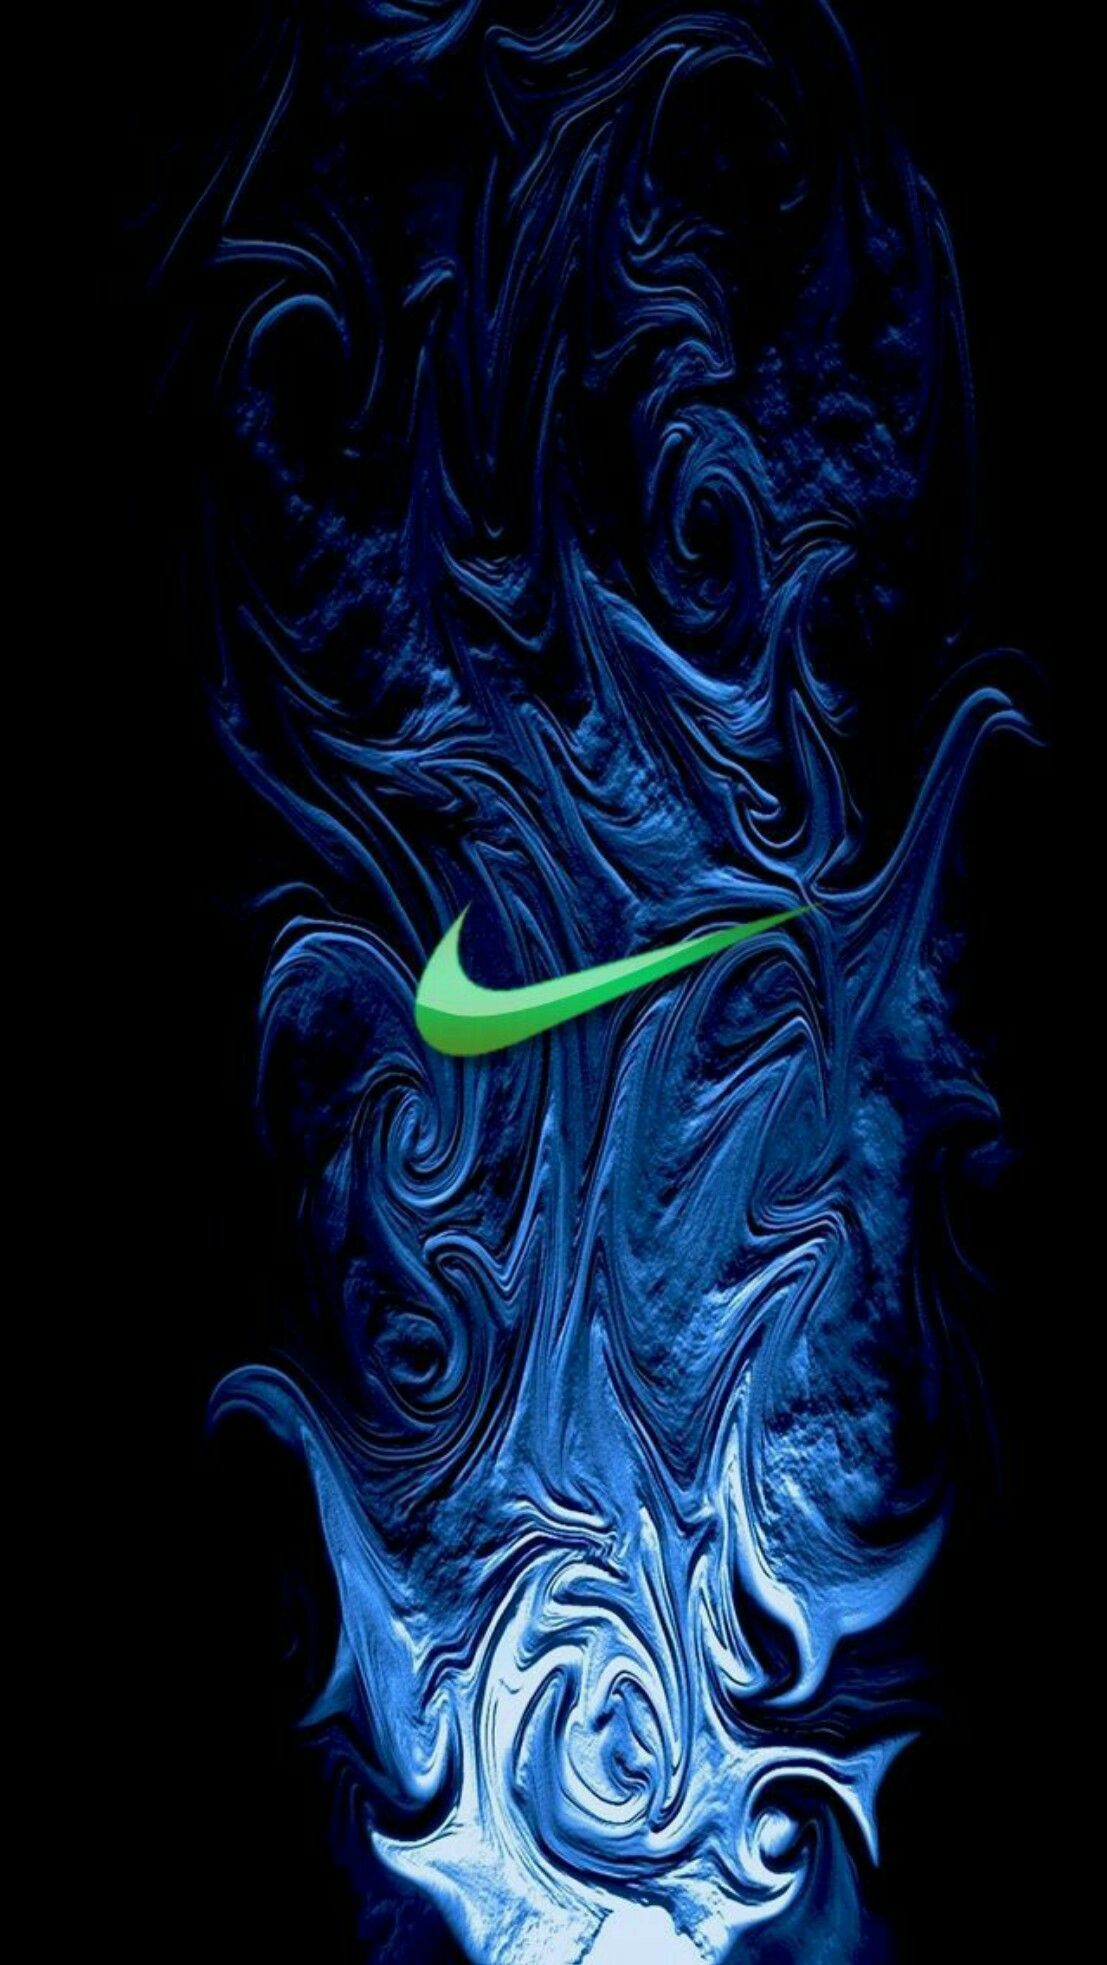 Bộ sưu tập hình nền Nike màu đen và xanh lá cây sẽ khiến cho màn hình điện thoại của bạn trở nên đẹp hơn, hấp dẫn hơn và phong cách hơn. Với những hình ảnh hình xăm và logo cửa hàng, giành cho những đam mê Nike nghiện, thành công của bạn trong tất cả các hoạt động của bạn quả không bao giờ chìm vào quên lãng.